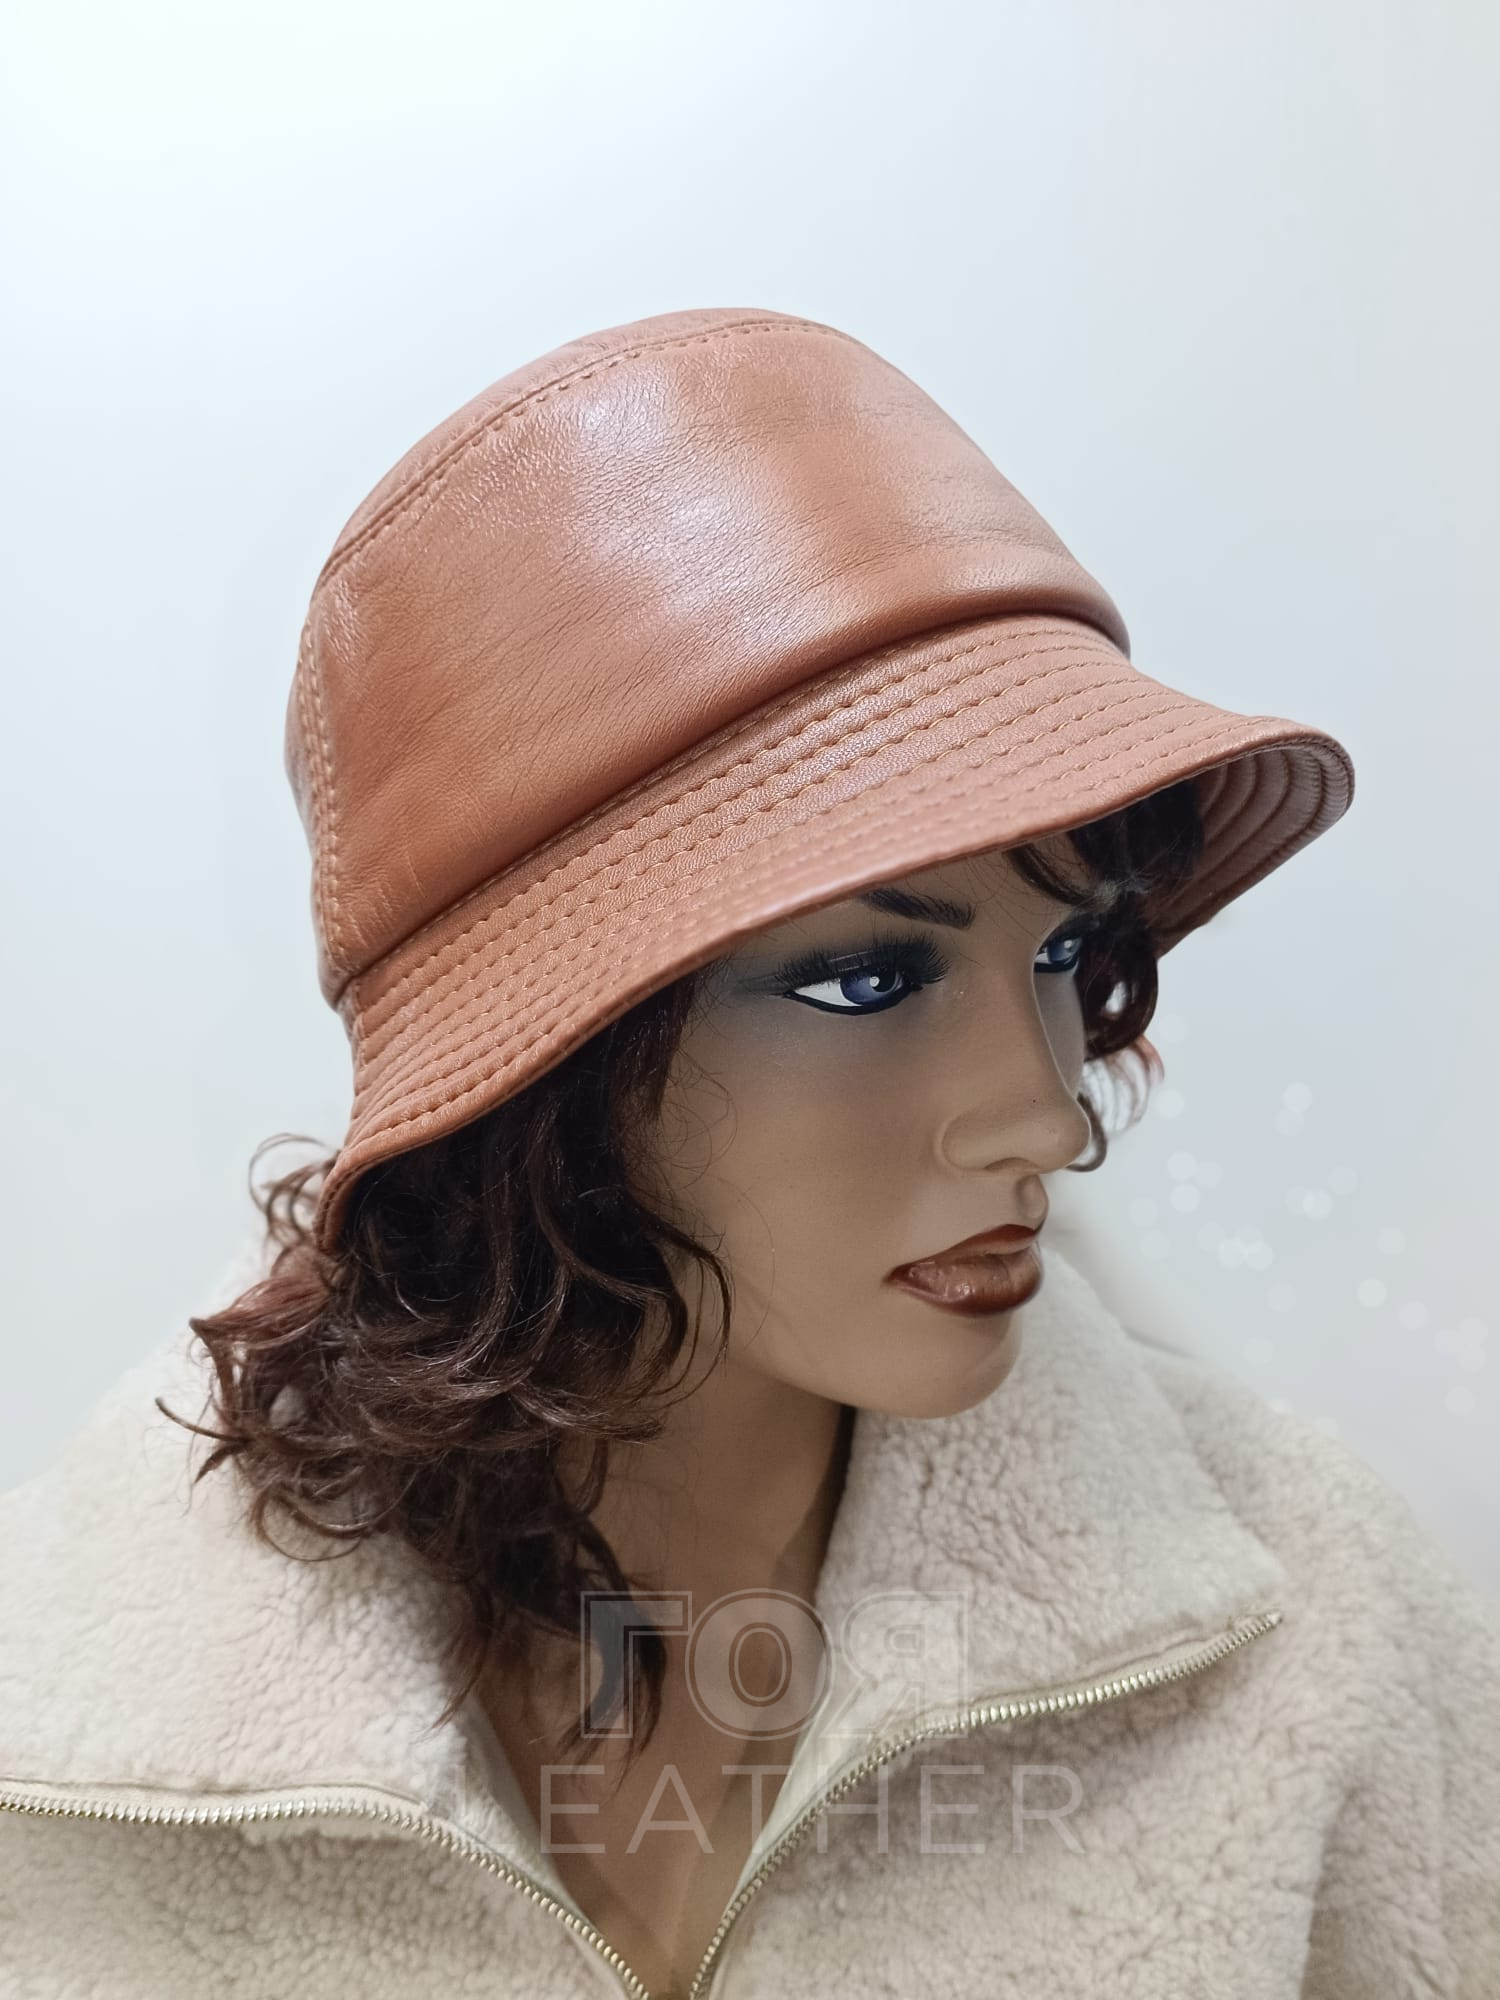 Дамска кожена шапка панамка, цвят камел. Дамска кожена шапка панамка. Дамска шапка панамка от ГОЯ Leather. Шапка-панамка изработена от 100% естествена кожа .